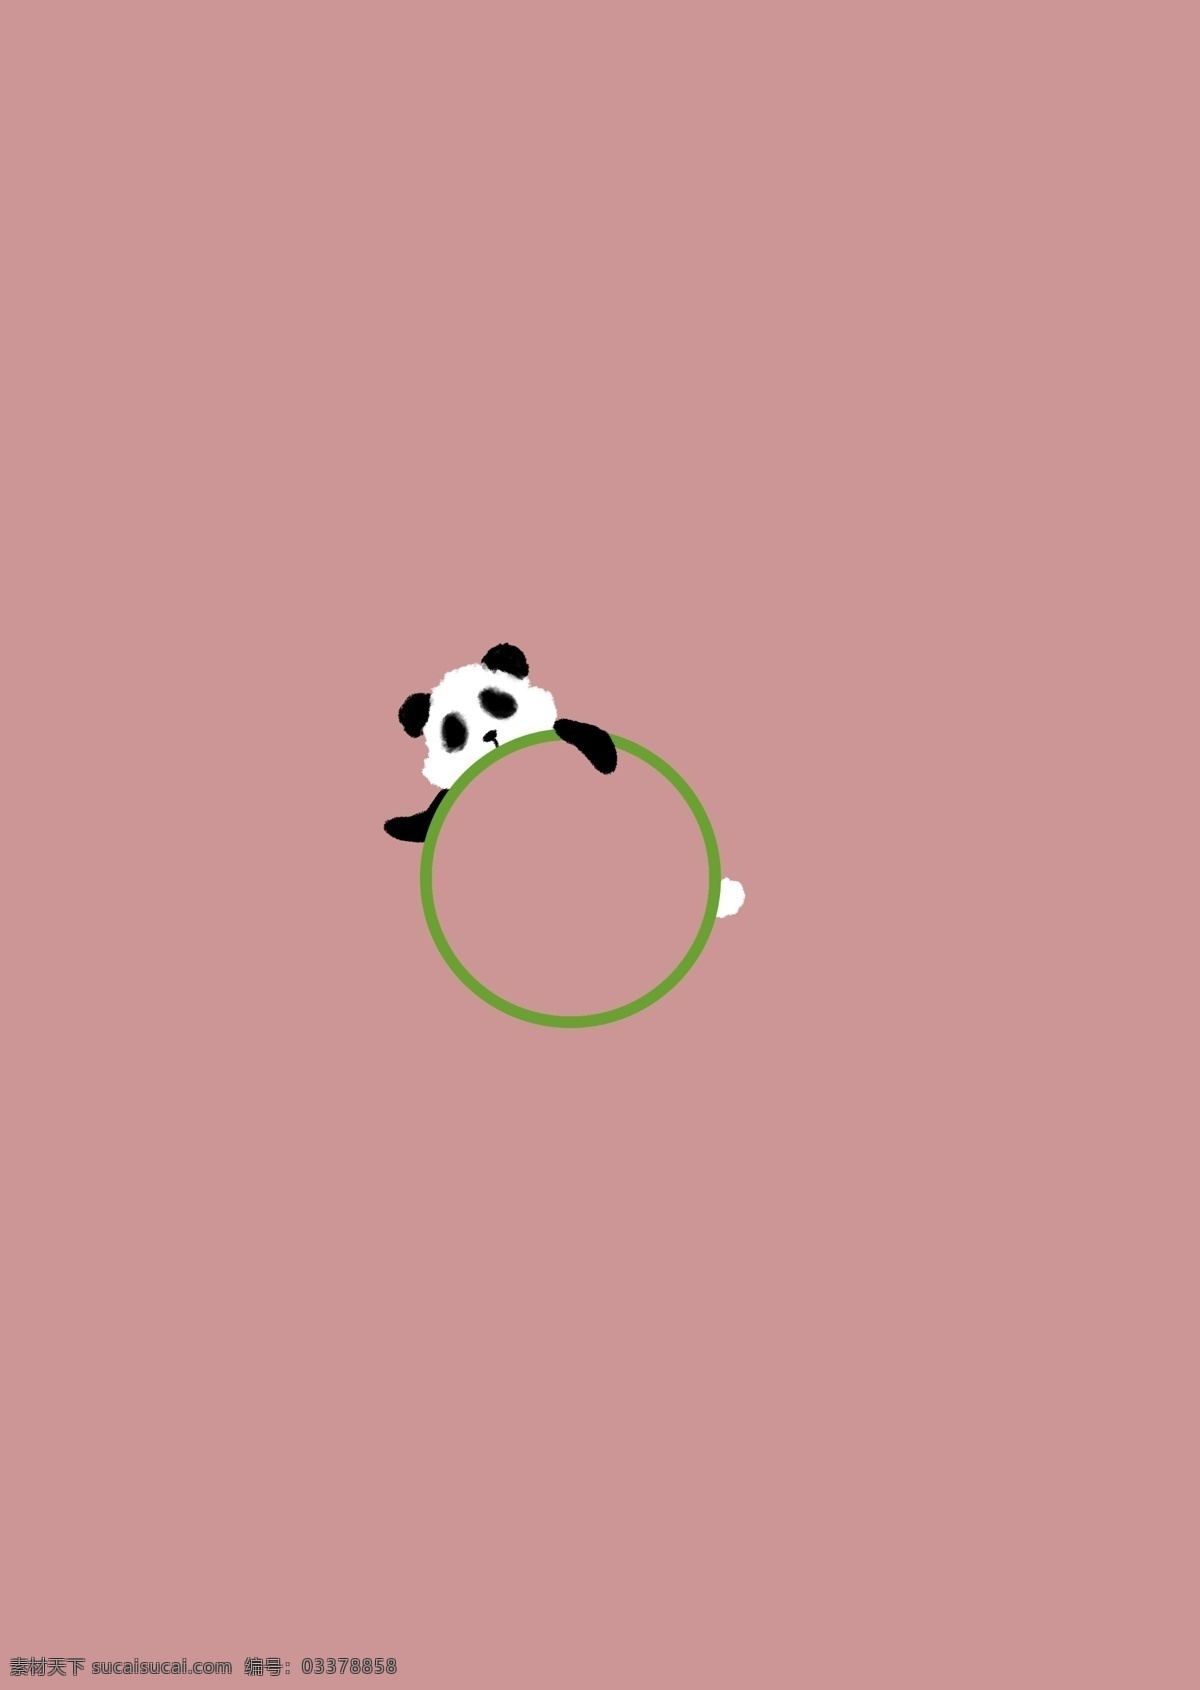 呆 萌 国宝 熊猫 可爱 趣味 绿色 边框 大熊猫 小动物 创意 小清新 简易图 免抠图 调皮 儿童风 文艺风